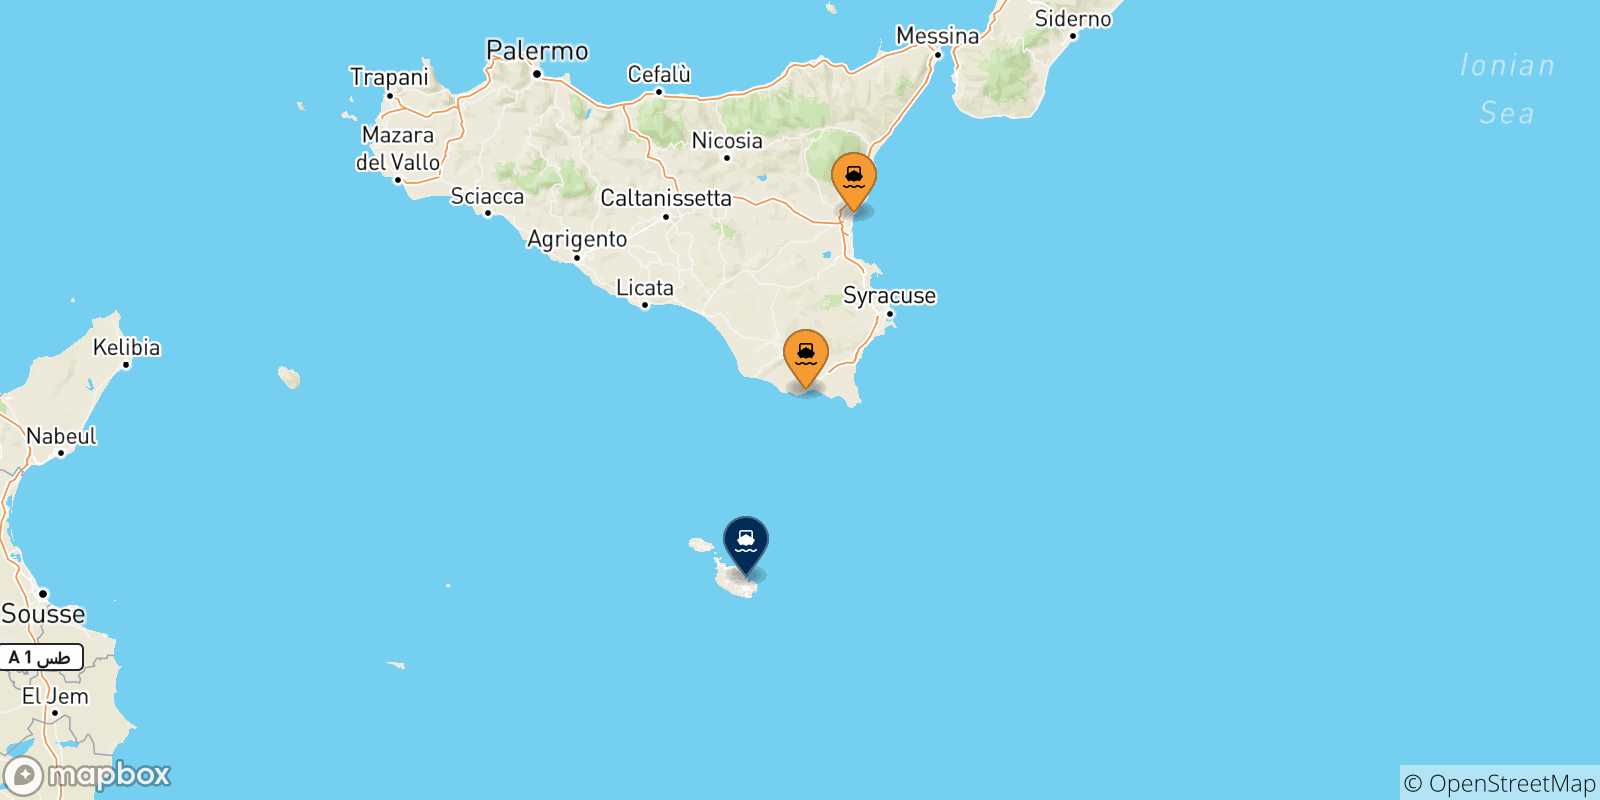 Mappa delle possibili rotte tra la Sicilia e Malta